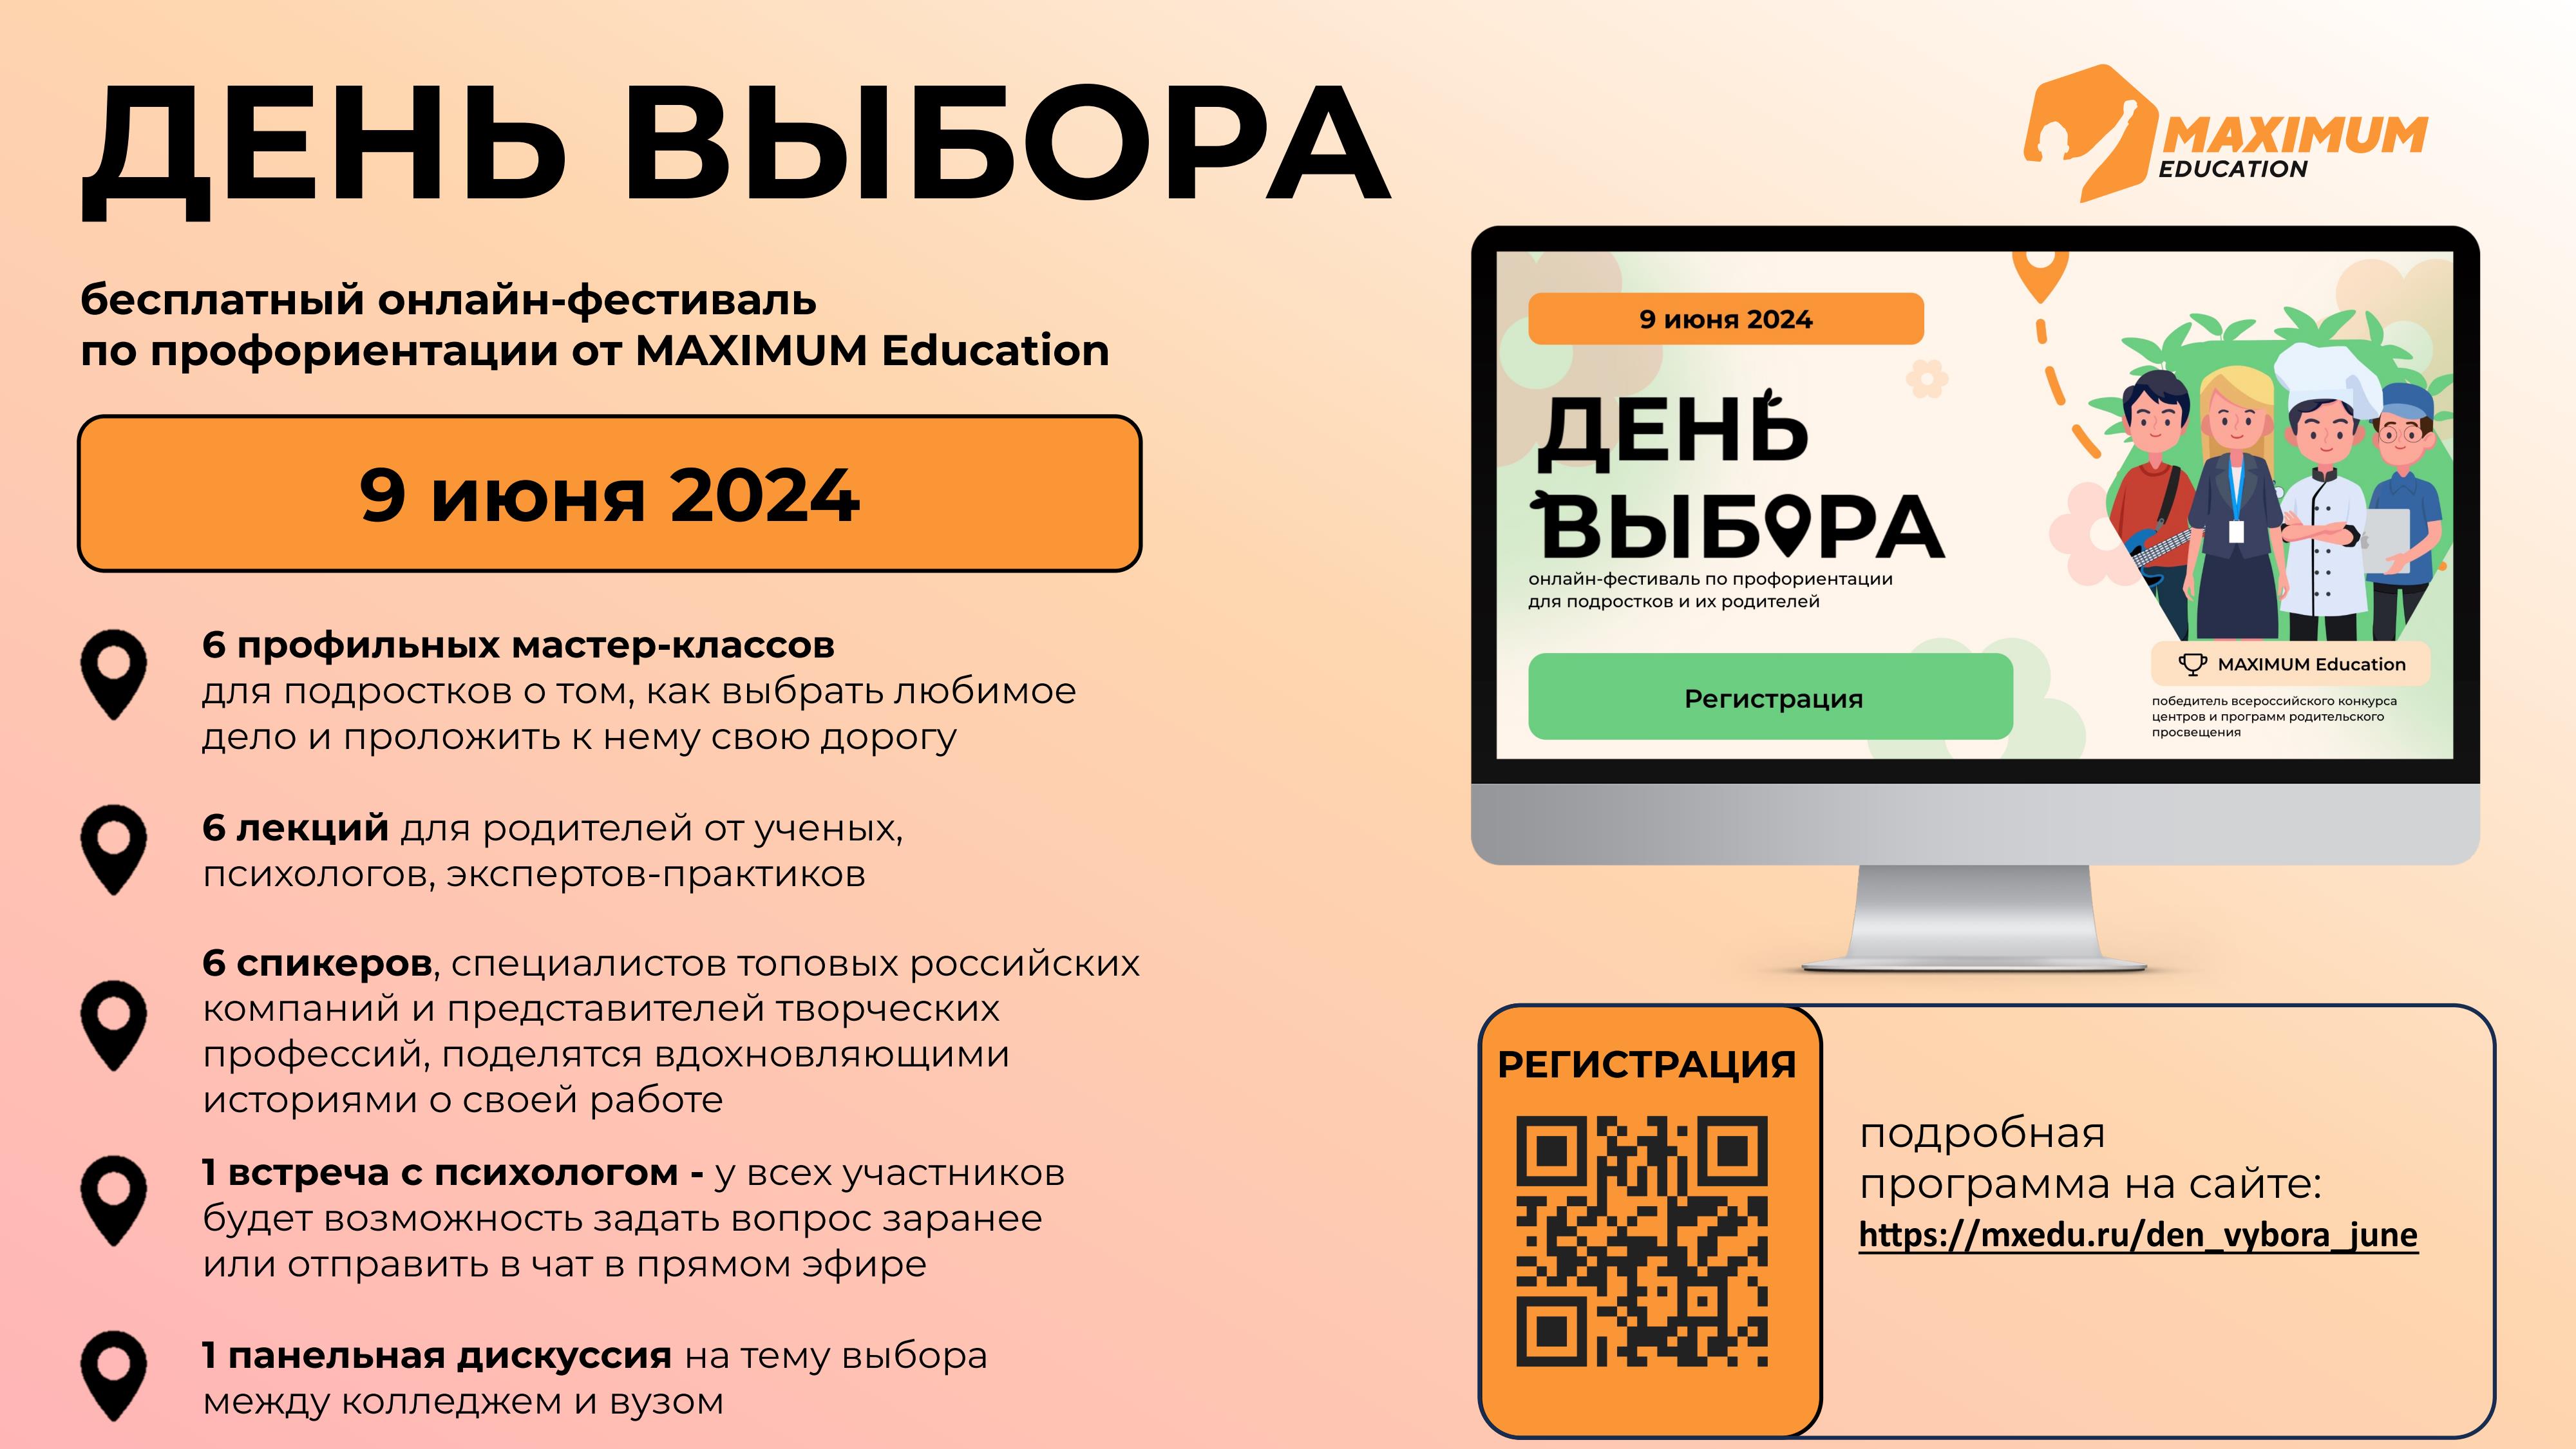 Всероссийский онлайн-фестиваль по профориентации «День Выбора». Фестиваль является бесплатным и будет полезен ученикам 5-11 классов и их родителям. Организатором мероприятия является MAXIMUM Education.